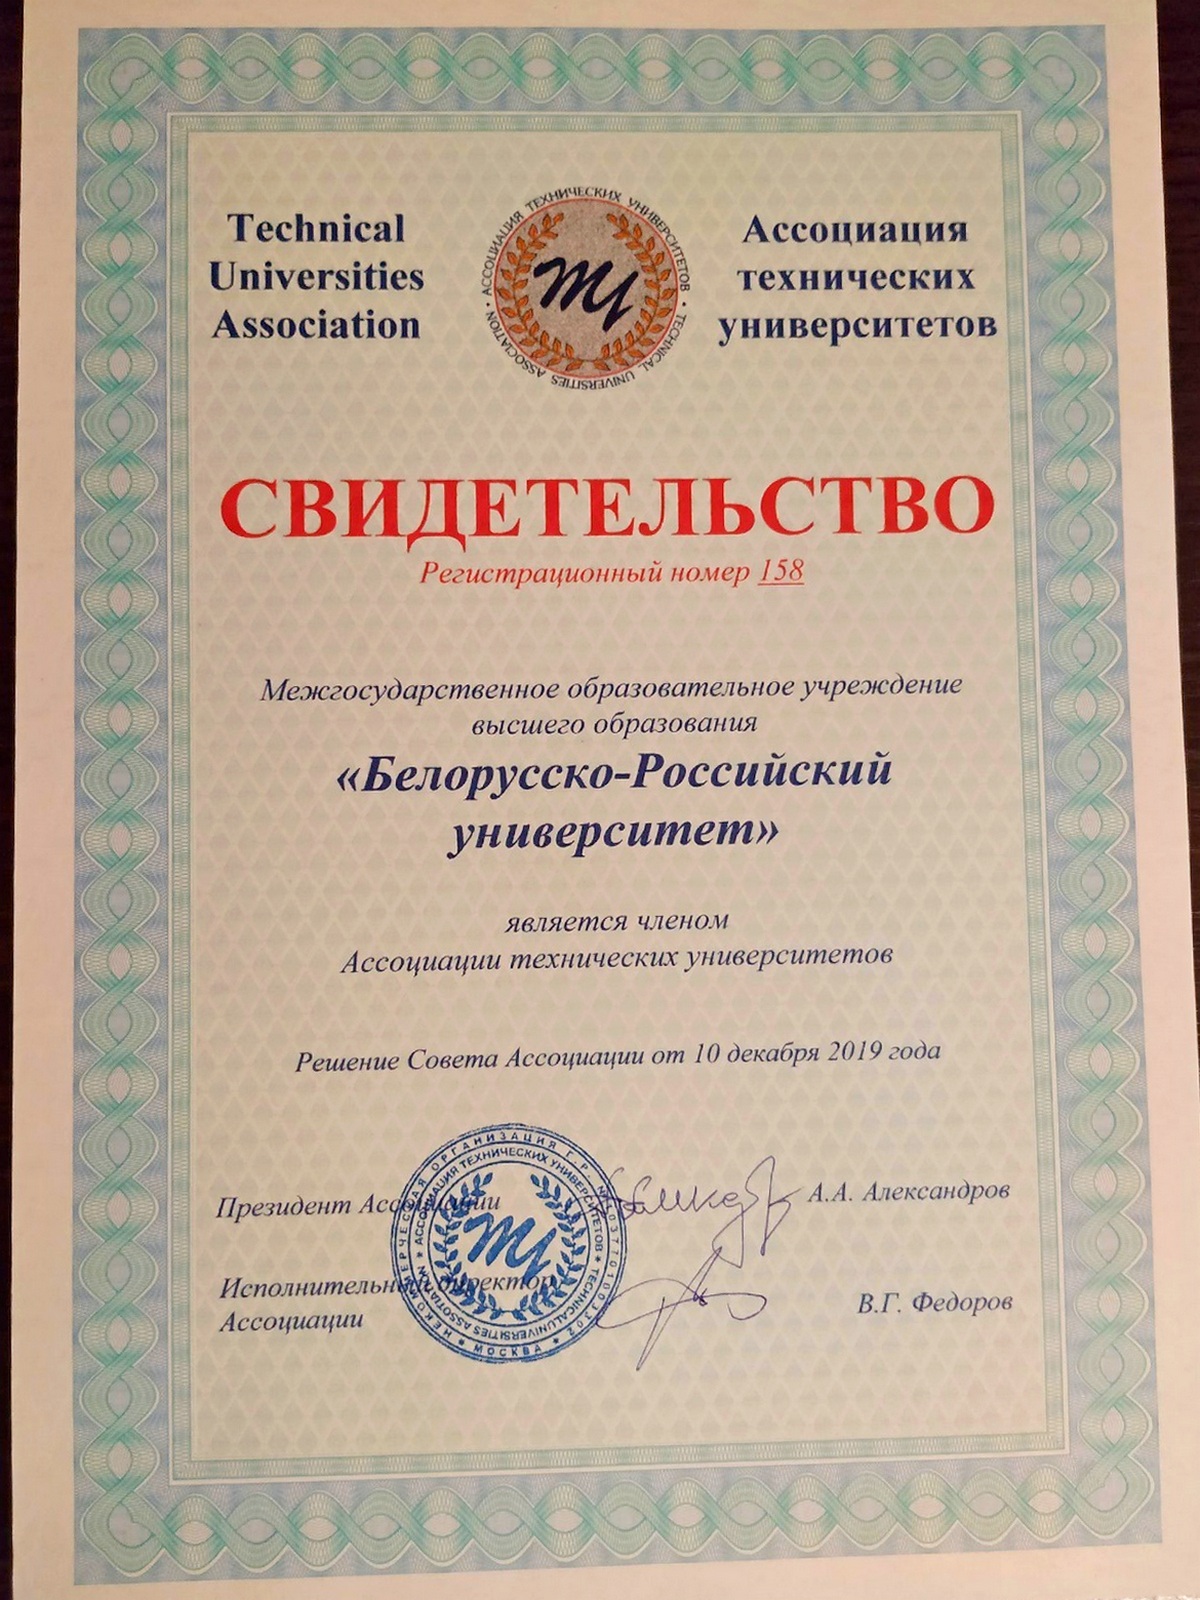 Могилевский БРУ принят в состав членов Ассоциации технических университетов 